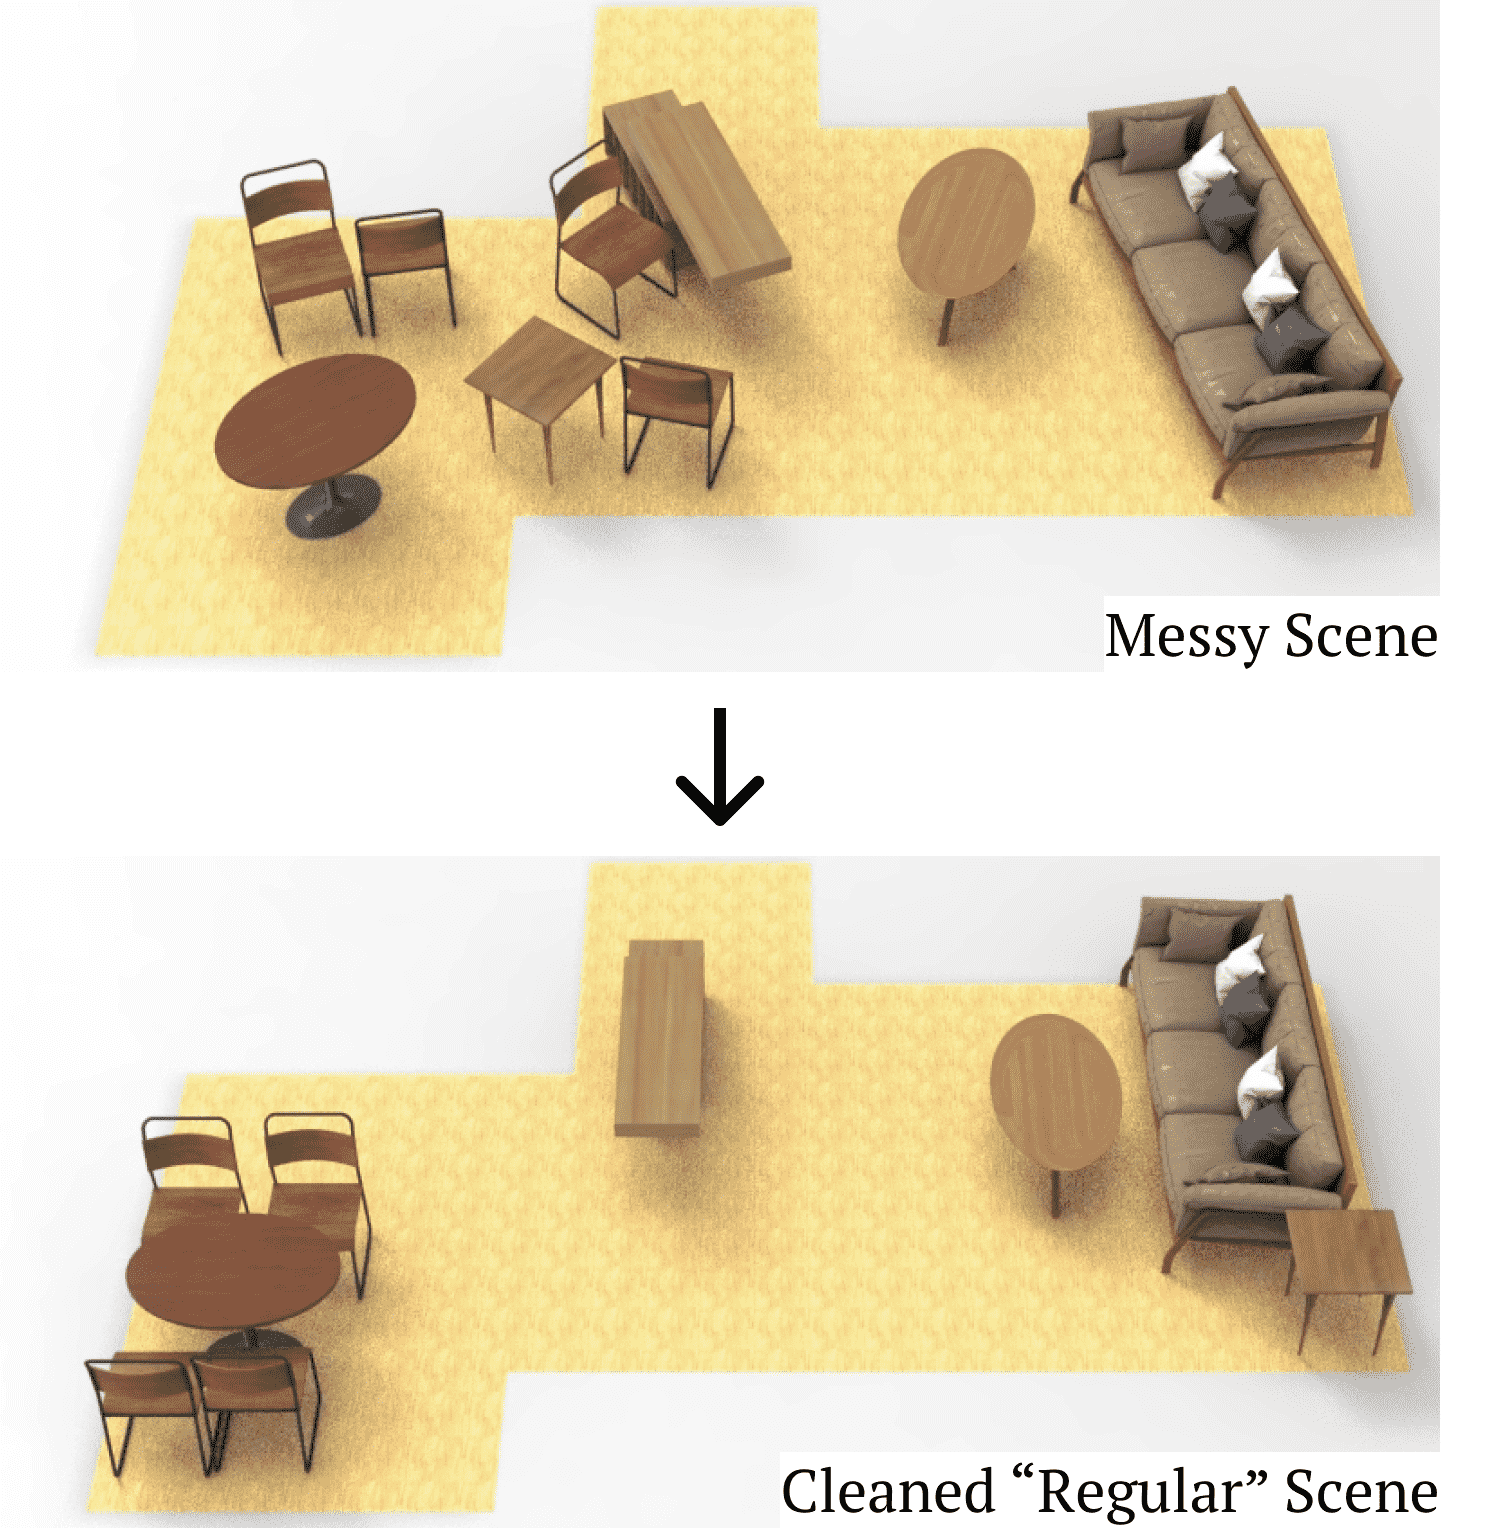 LEGO-Net: Learning Regular Rearrangements of Objects in Rooms